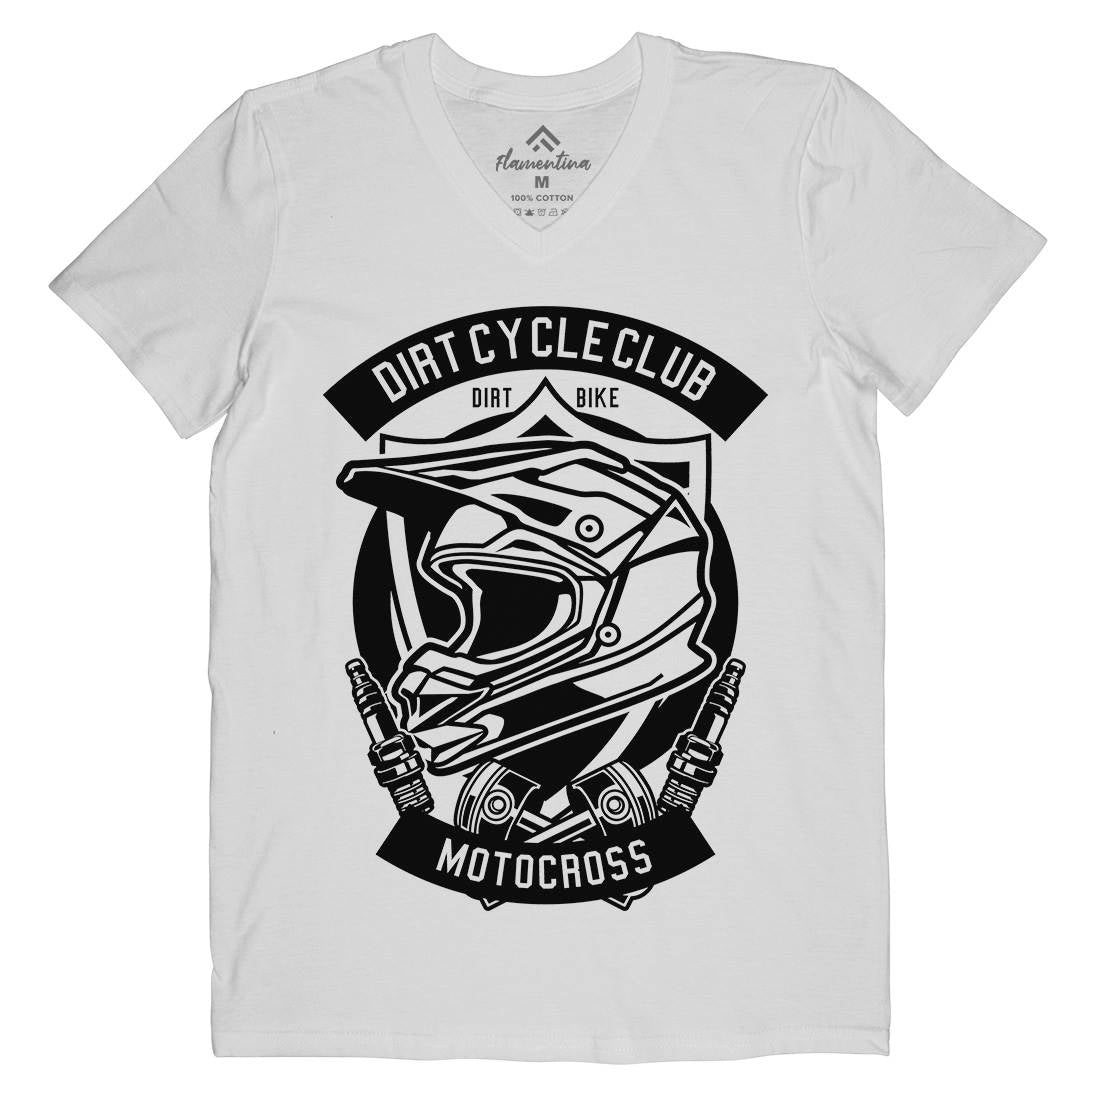 Dirty Cycle Club Mens Organic V-Neck T-Shirt Motorcycles B532